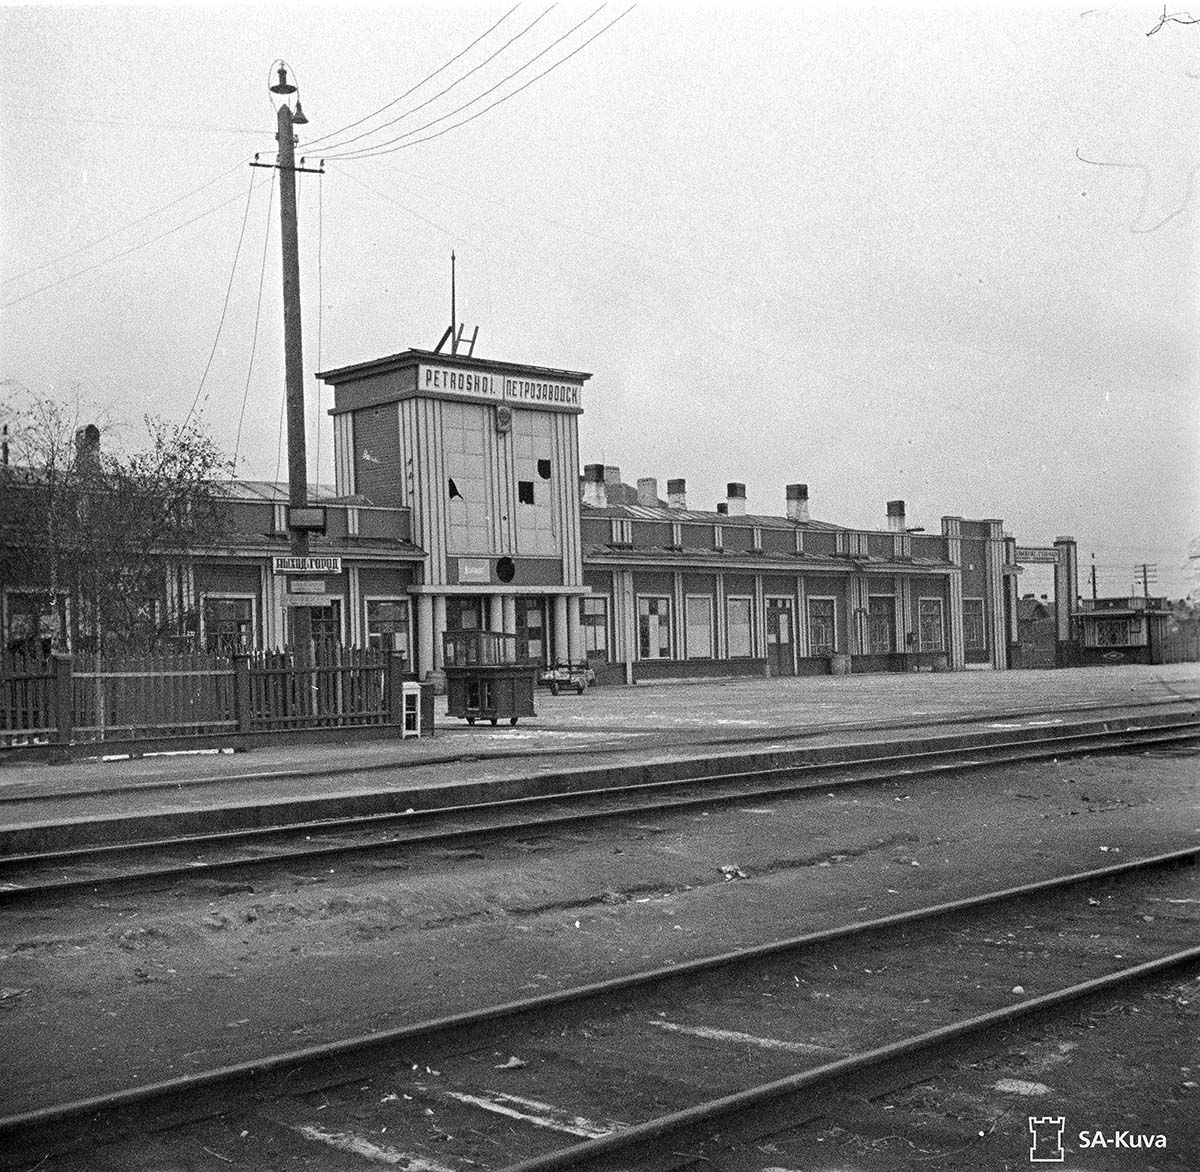 Петрозаводск. Железнодорожный вокзал, 1941 год